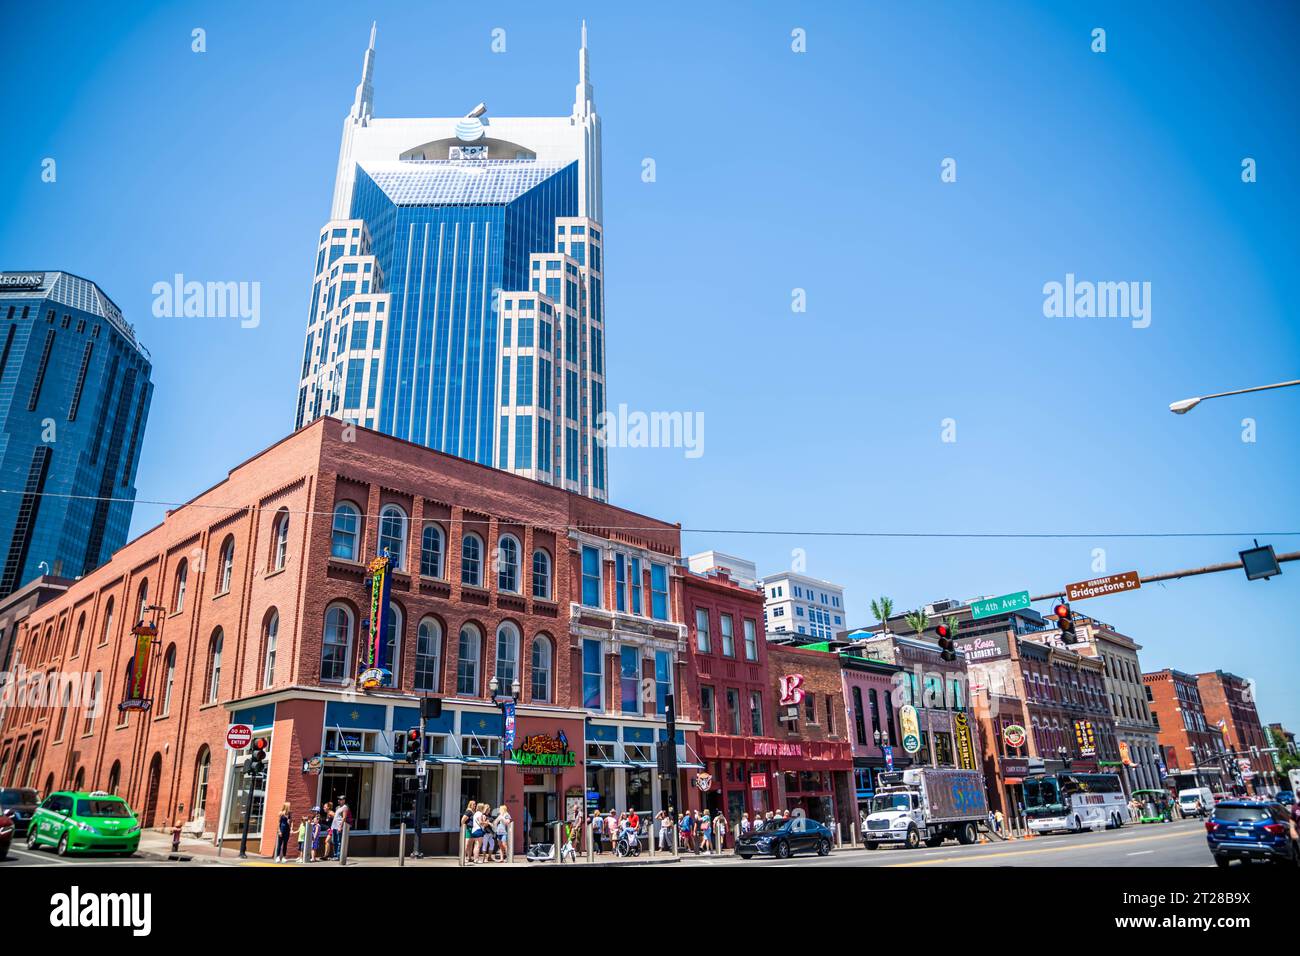 Nashville, TN, USA - 29 juin 2022 : un endroit connu pour sa musique country, sa scène pop et rock florissante Banque D'Images